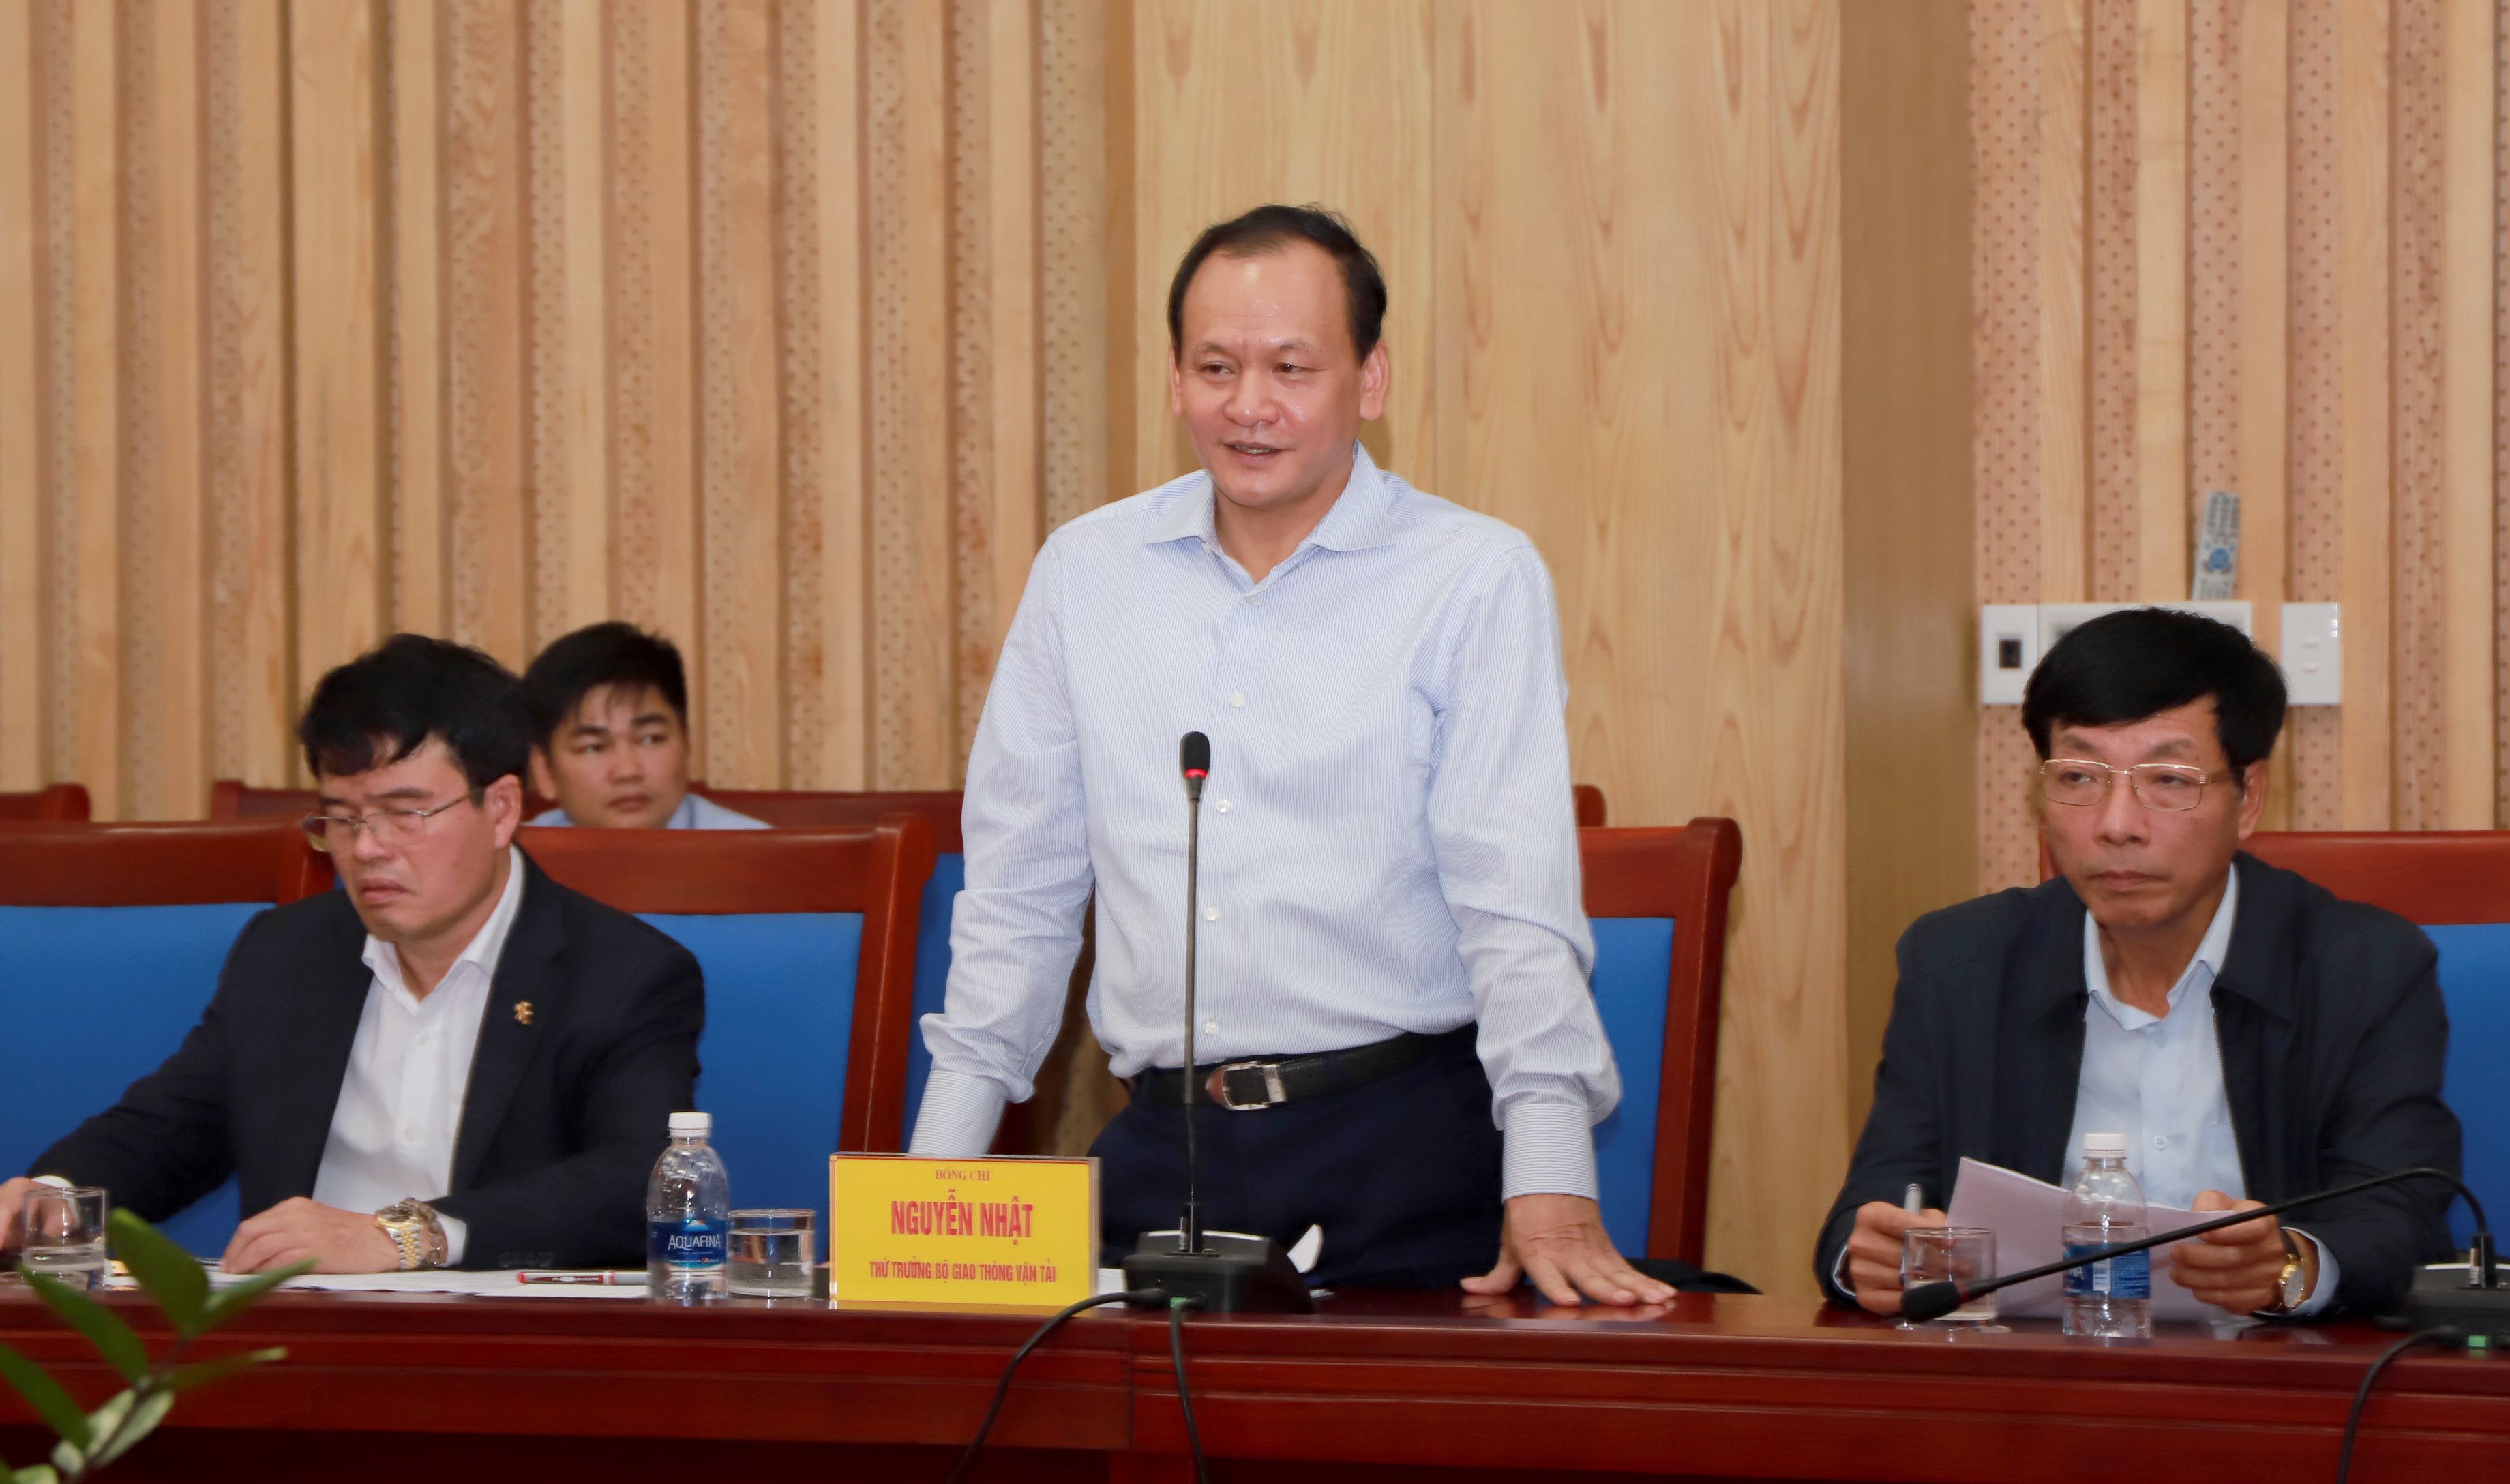 Thứ trưởng Bộ GTVT Nguyễn Nhật phát biểu tại cuộc làm việc. Ảnh: Thành Duy